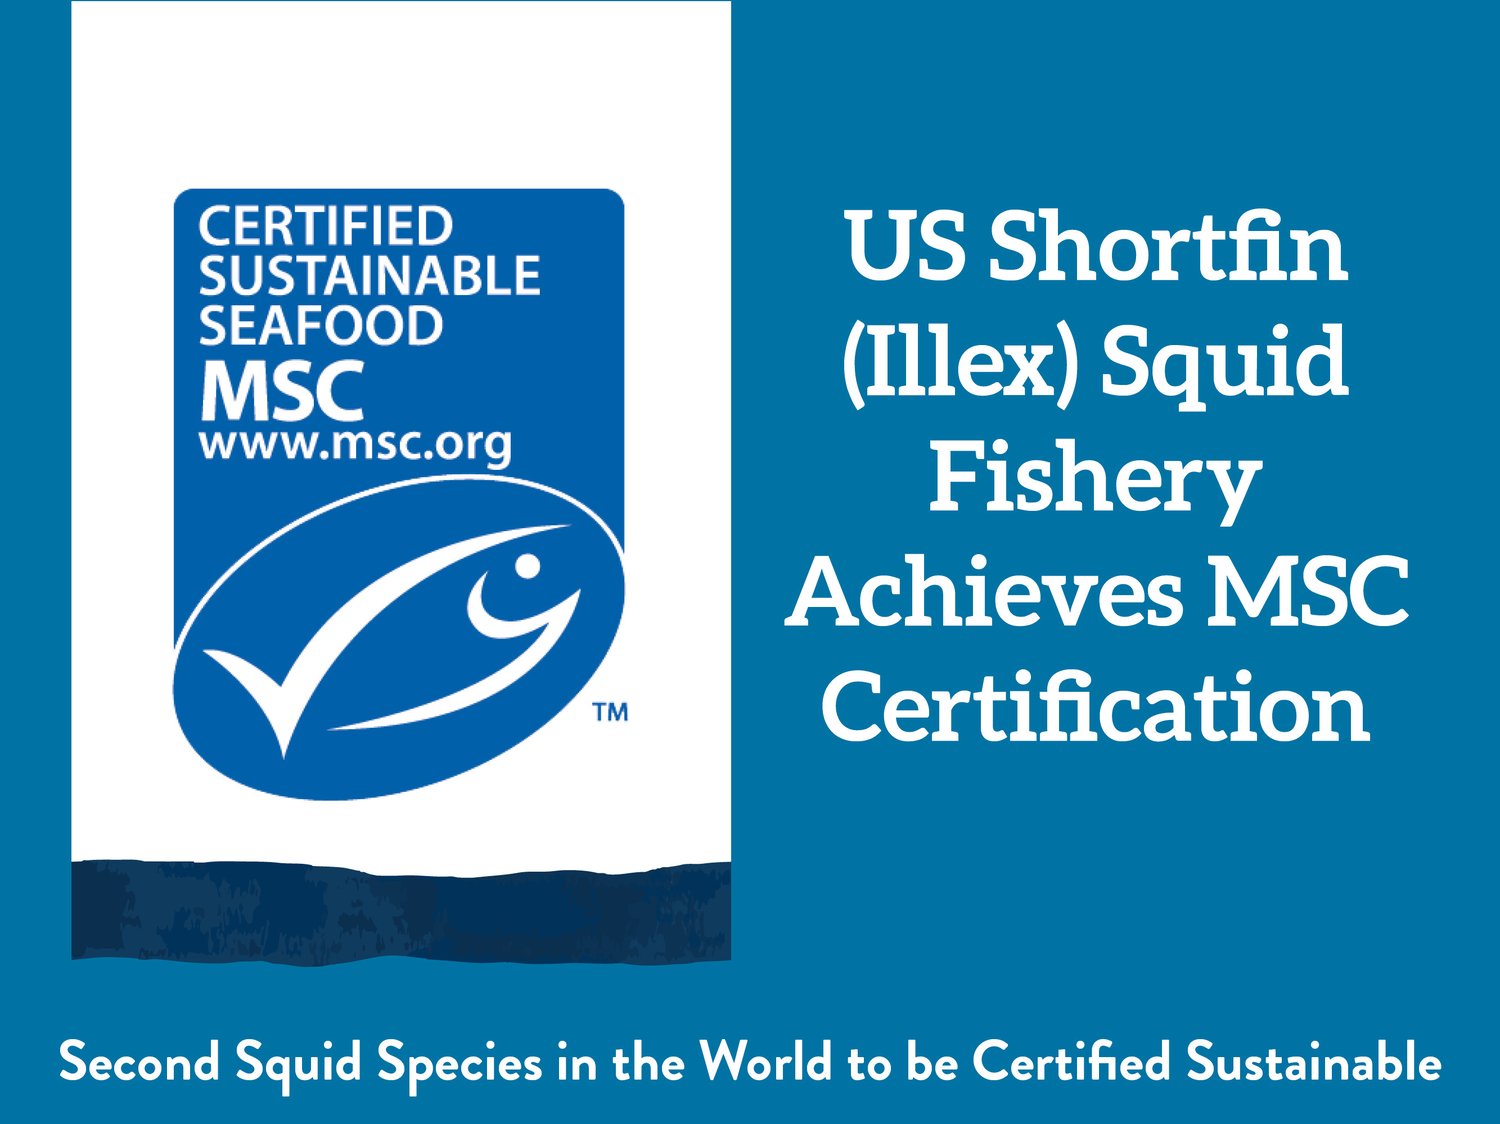 US Shortfin (Illex) Squid Fishery Achieves MSC Certification